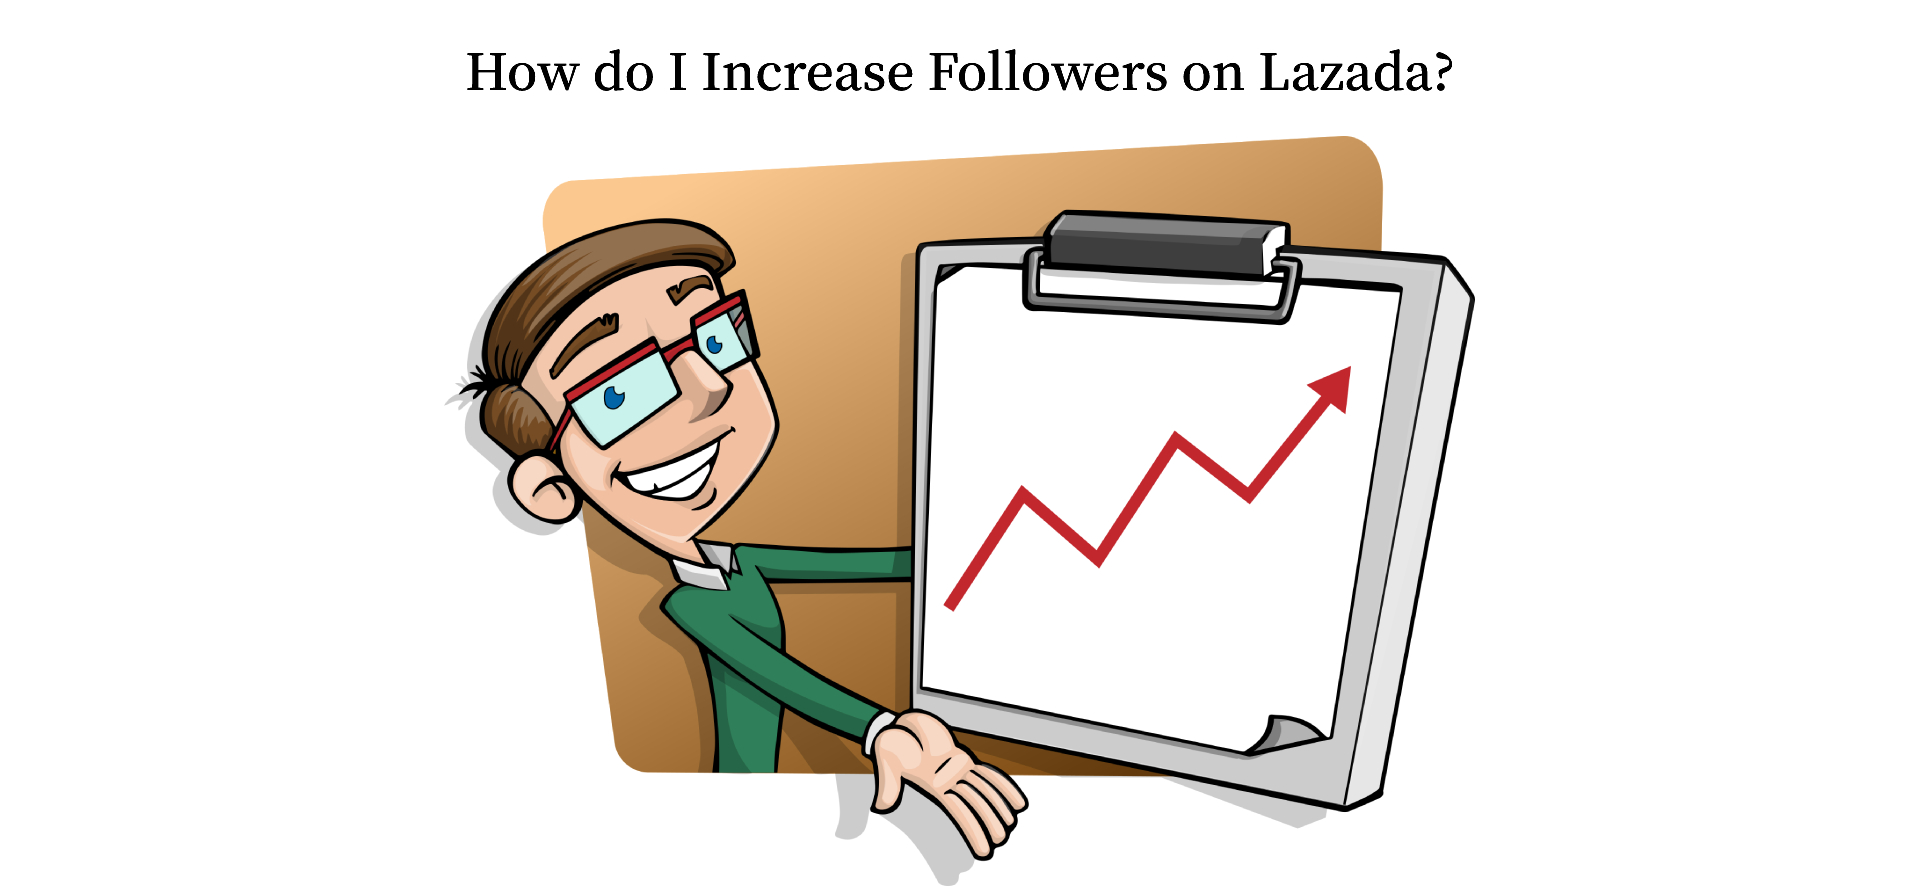 How do I Increase Followers on Lazada?